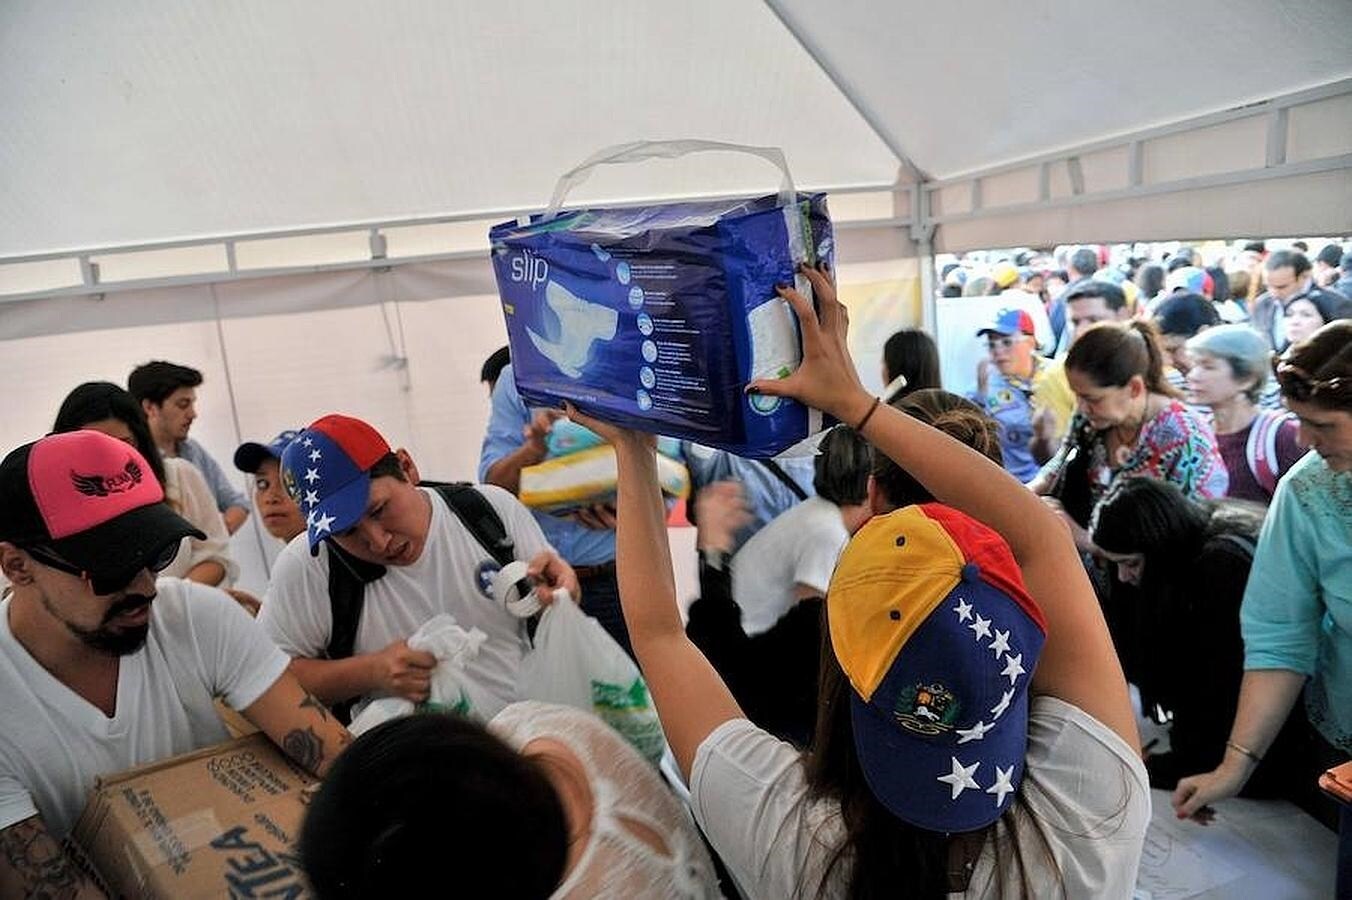 Una mujer sostiene una bolsa de pañales, mientras otros ciudadanos hacen cola para entregar sus donativos para el pueblo venezolano en una colecta liderada por Lilian Tintori en Bogotá